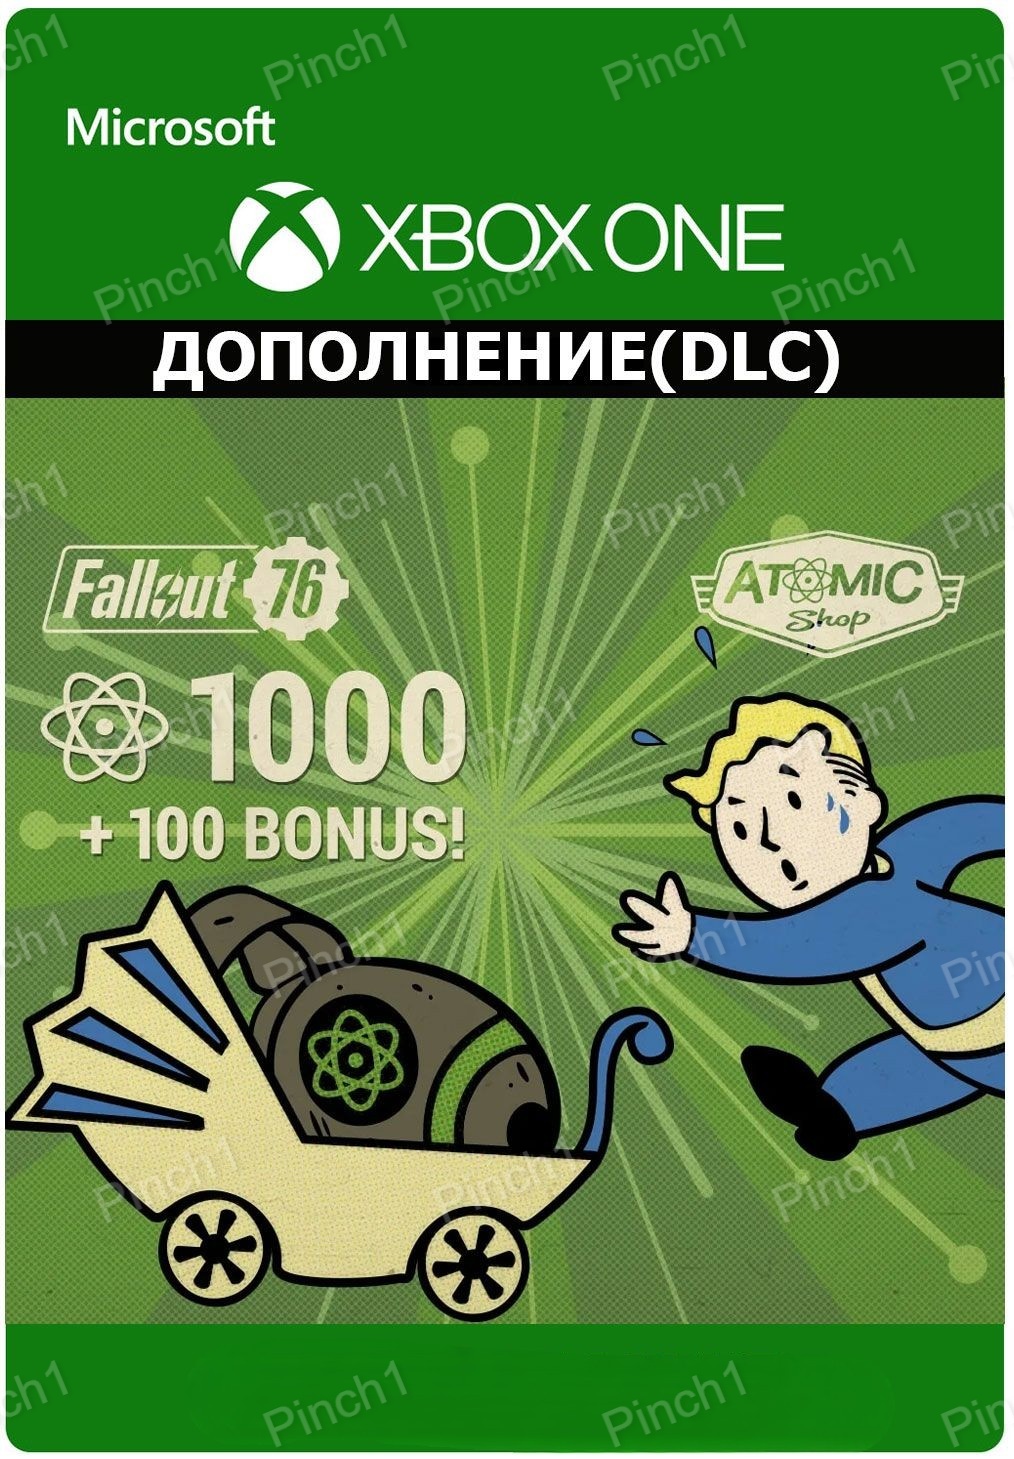 Скриншот ❤️Fallout 76: Atoms, Атомы, Подписка Fallout 1st XBOX❤️